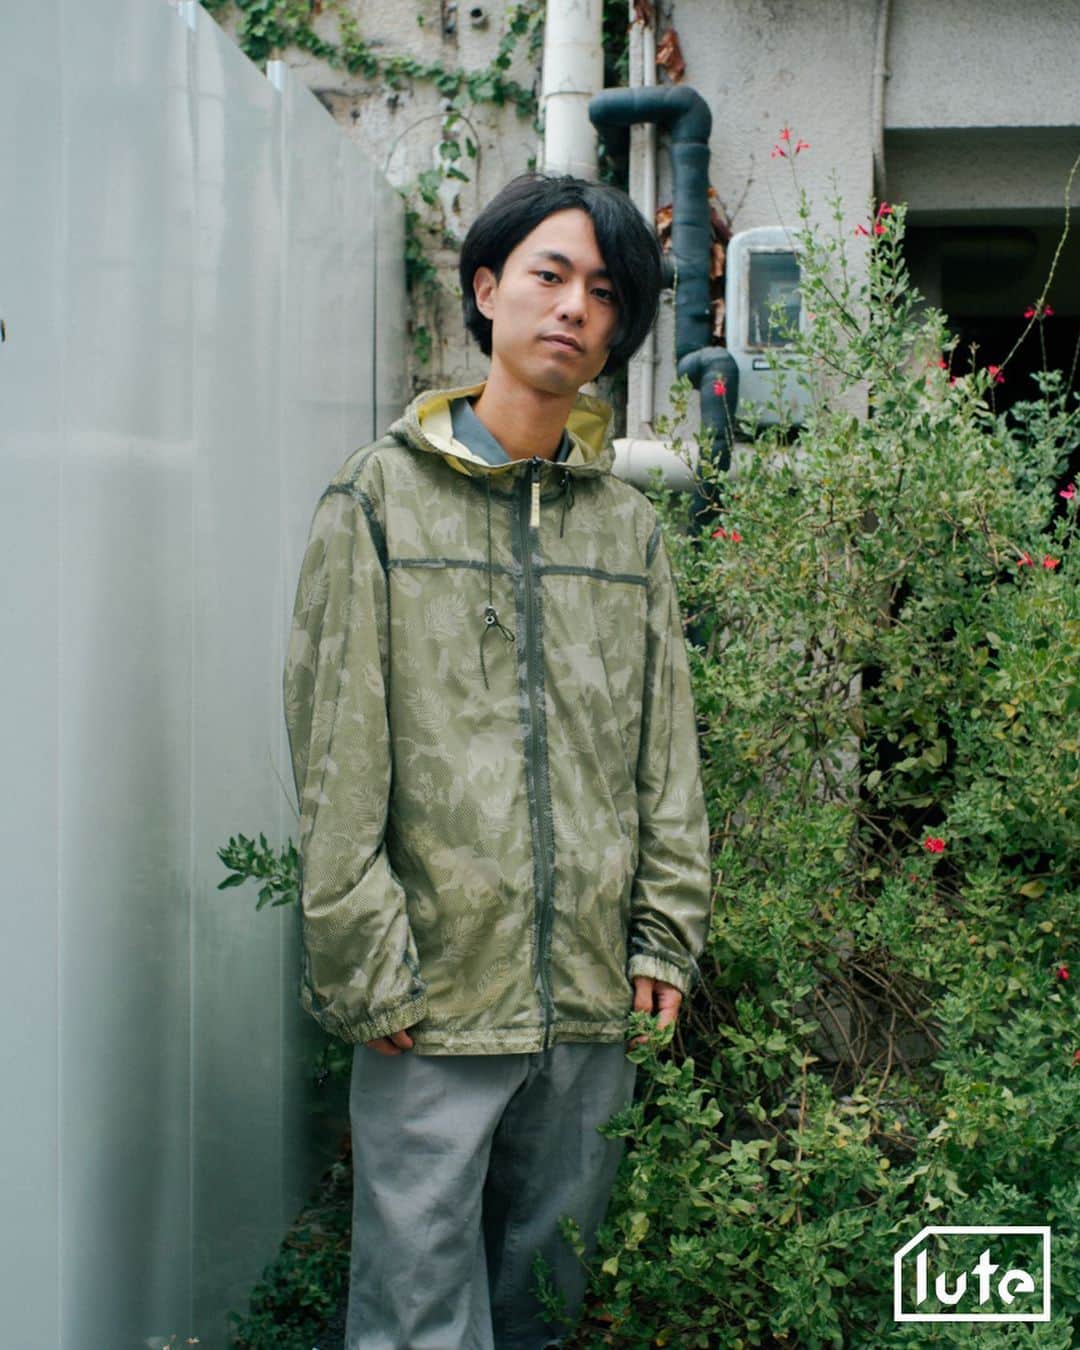 lute / ルーテさんのインスタグラム写真 - (lute / ルーテInstagram)「Interview with Nobuki Akiyama ( @nobukiakiyama ) Occupation：音楽家  Q. 最近どんな音楽を聞いてる？  ambient, BECK, Radiohead, Elliott Smith  Q. 音楽に目覚めたきっかけは？  小学校の鼓笛隊、教会音楽、TVで見かけたnobodyknows+。  Q. 自分の作品で一番のお気に入りは？  Under My Skin  Q. あなたにとって最高の一曲は？  たくさんありますが、今日はElliott Smith - Somebody That I Used To Know  Q. あなたにとって最高のアルバムは？  Radiohead - The Bends  Q. あなたにとって最高のアーティストは？  Damon Albarn  Q. 思い出に残っているフェス体験は？  Summer Sonicで見たPhoenix, LAのBeach Gothで見たDie Antwoord  Q. お気に入りのライブハウス、クラブはある？  Three, Basement Bar, Spread, Live Haus, Toonice, 騒音舎, Remy's, The Windmill   Q. 今注目しているアーティストは？  The Dare, Deadharrie, Home, banglang, Harry Teardrop, DAFTY RORN, Peterparkar69, a fungus, bar italia, feeble little horse  Q. 最近はどこで何して遊んでる？  家で模様替えしてます。コロナで寝込んでましたが元気になってきたのでスタジオでセッションしたい。  Q. コレクションしているものはある？  カセットテープ。  Q. 最近気になっている人物やプロジェクトとかある？  音楽は、上記の注目しているアーティストと同じ。その他では、上海の出版レーベル、Same Paperという媒体が気になっています。  Q. コラボしてみたいアーティストは？  Gorillaz, Diplo, cwondo  Q. お気に入りのMVを教えて！  The Strokes - 12:51  Q. 最近気になっているニュースや社会問題はある？  ジャニーズ性加害問題、水道民営化問題、ロシアのウクライナ侵攻  Q. 好きなクリエーターはいる？  M.I.A., Braulio Amado,   Q. クリエイティビティの源は？  音楽と生活。  Q. 5年後はどんな存在になっていたい？  もっと自由でいたい。  Photography : @sumiretamura   Special Thanks! Styling: @p_u_r_i_t_y_ty   音楽動画メディア「lute」によるインタビュー企画「IN TOWN」✍️アーティストやクリエイターのインサイドをストリートから配信📷」9月14日 17時35分 - lutemedia